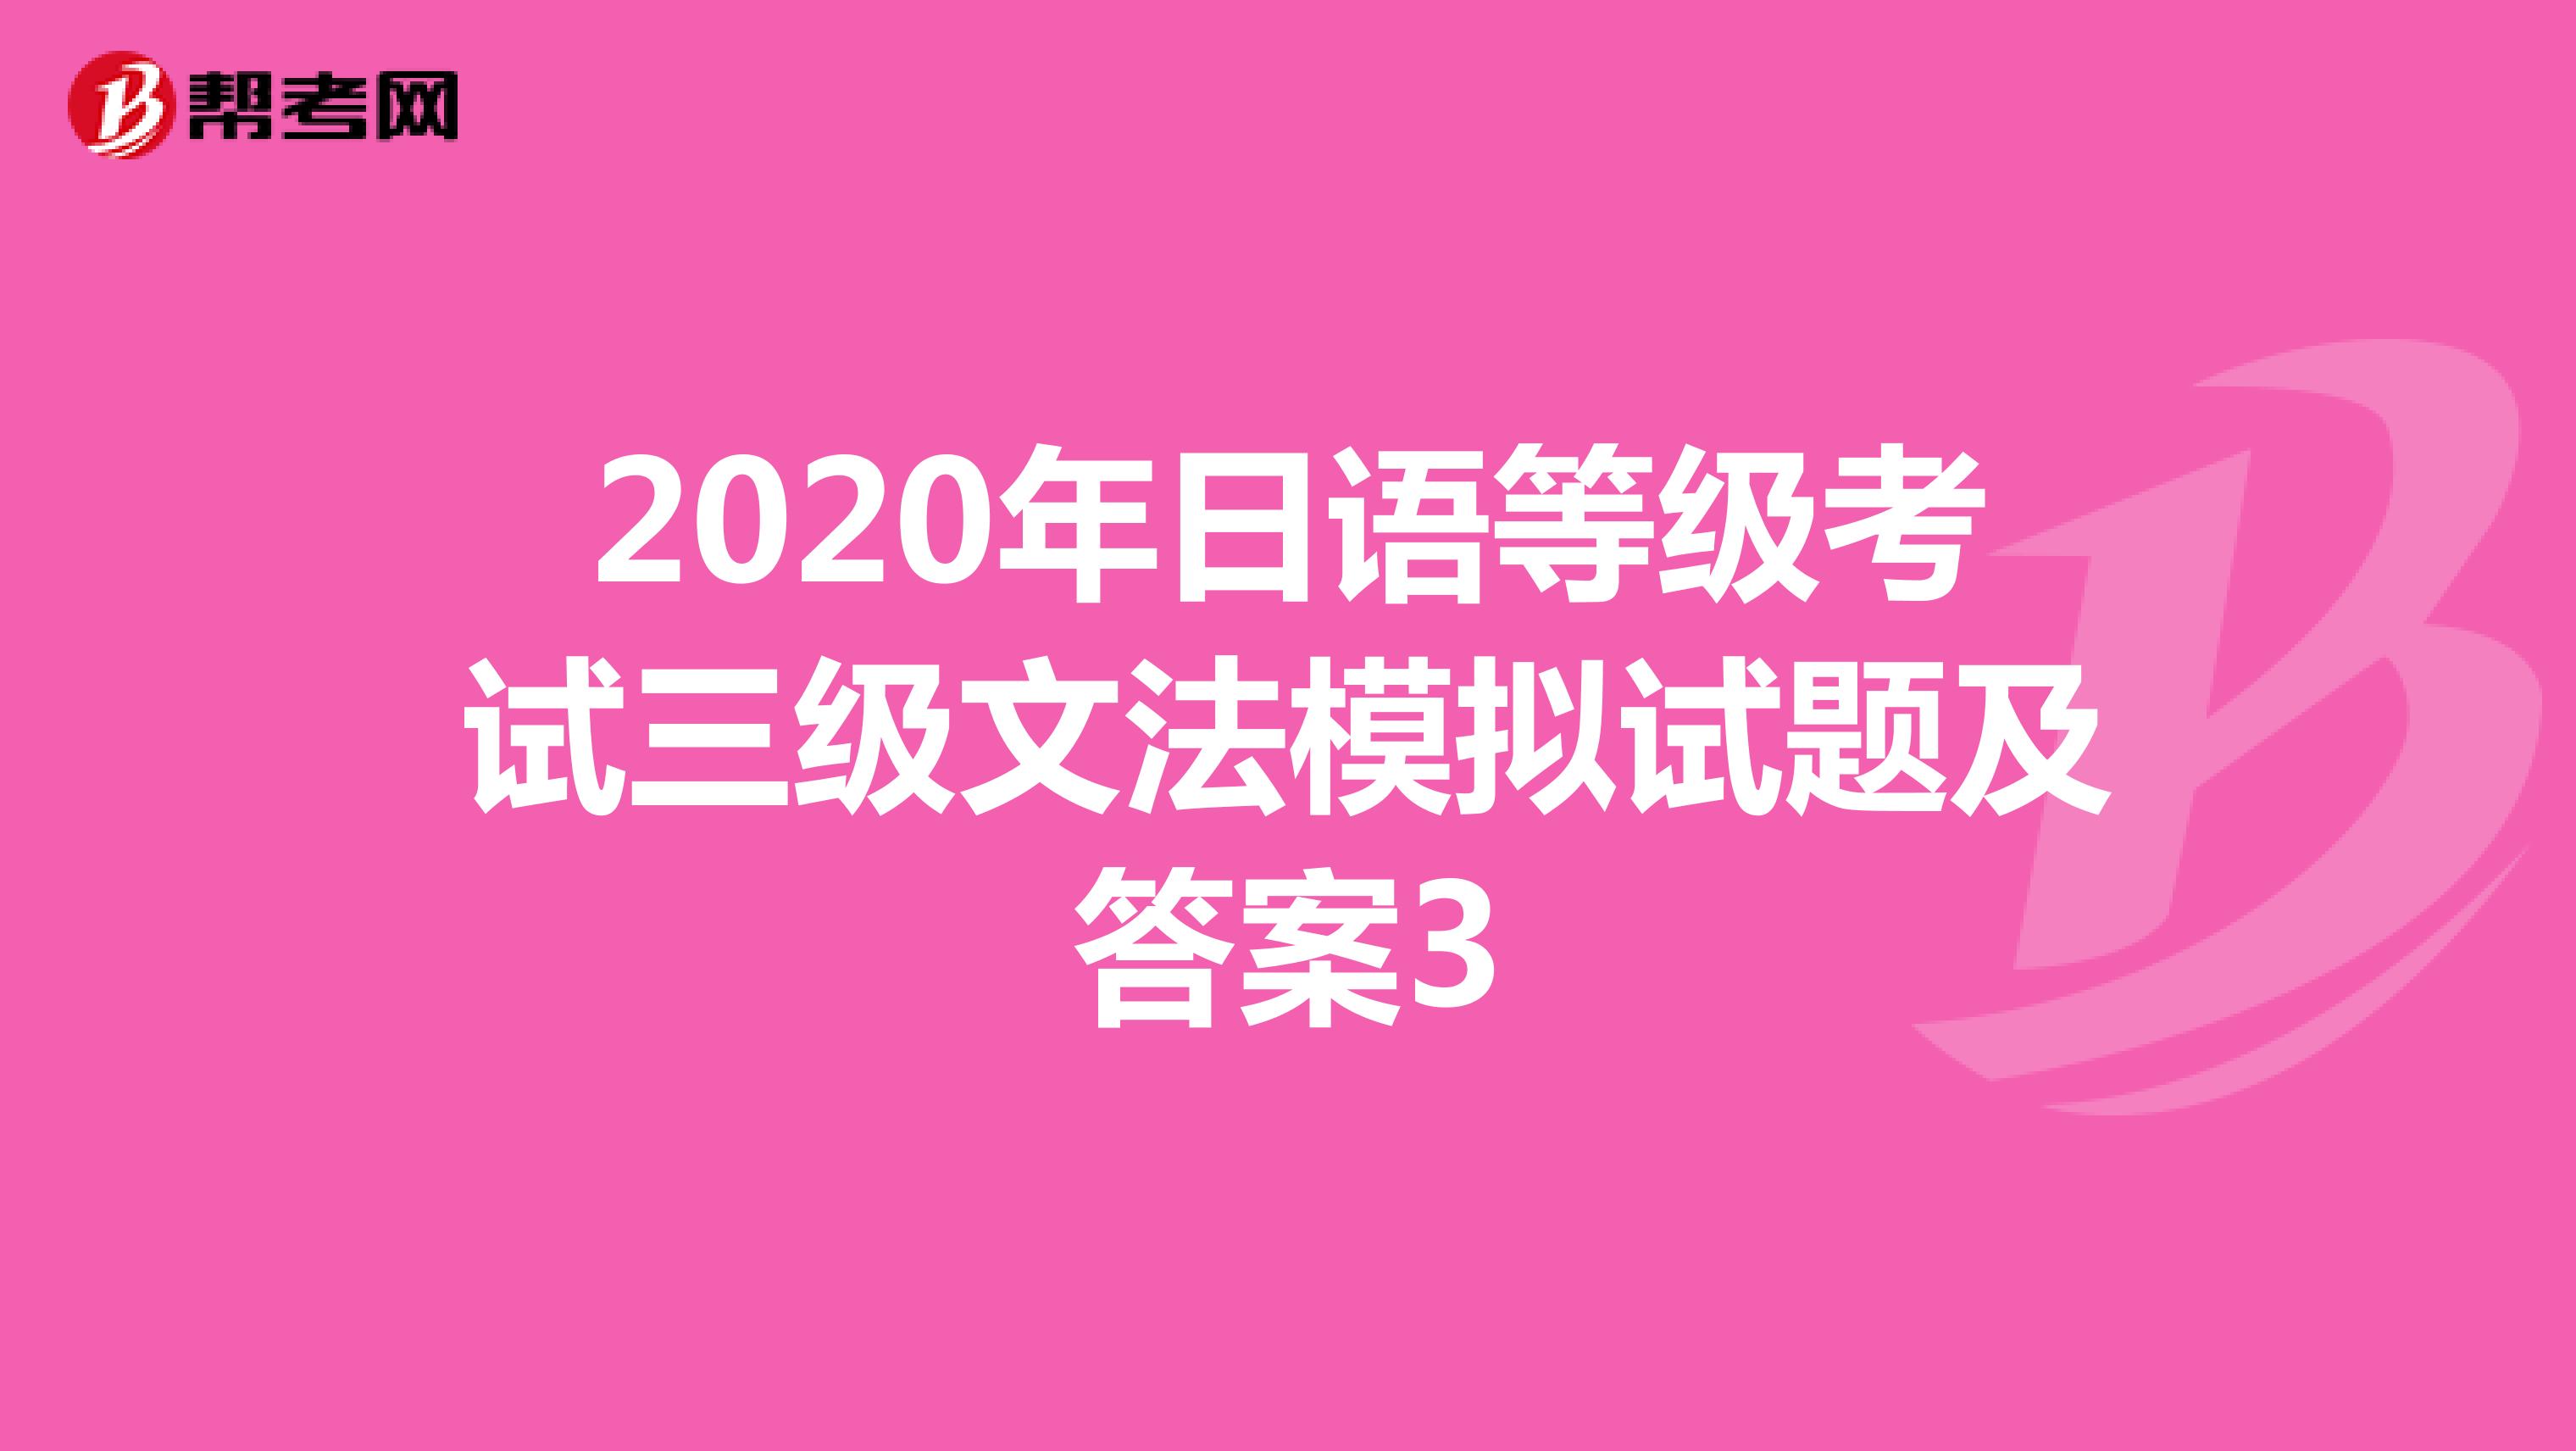 2020年日语等级考试三级文法模拟试题及答案3